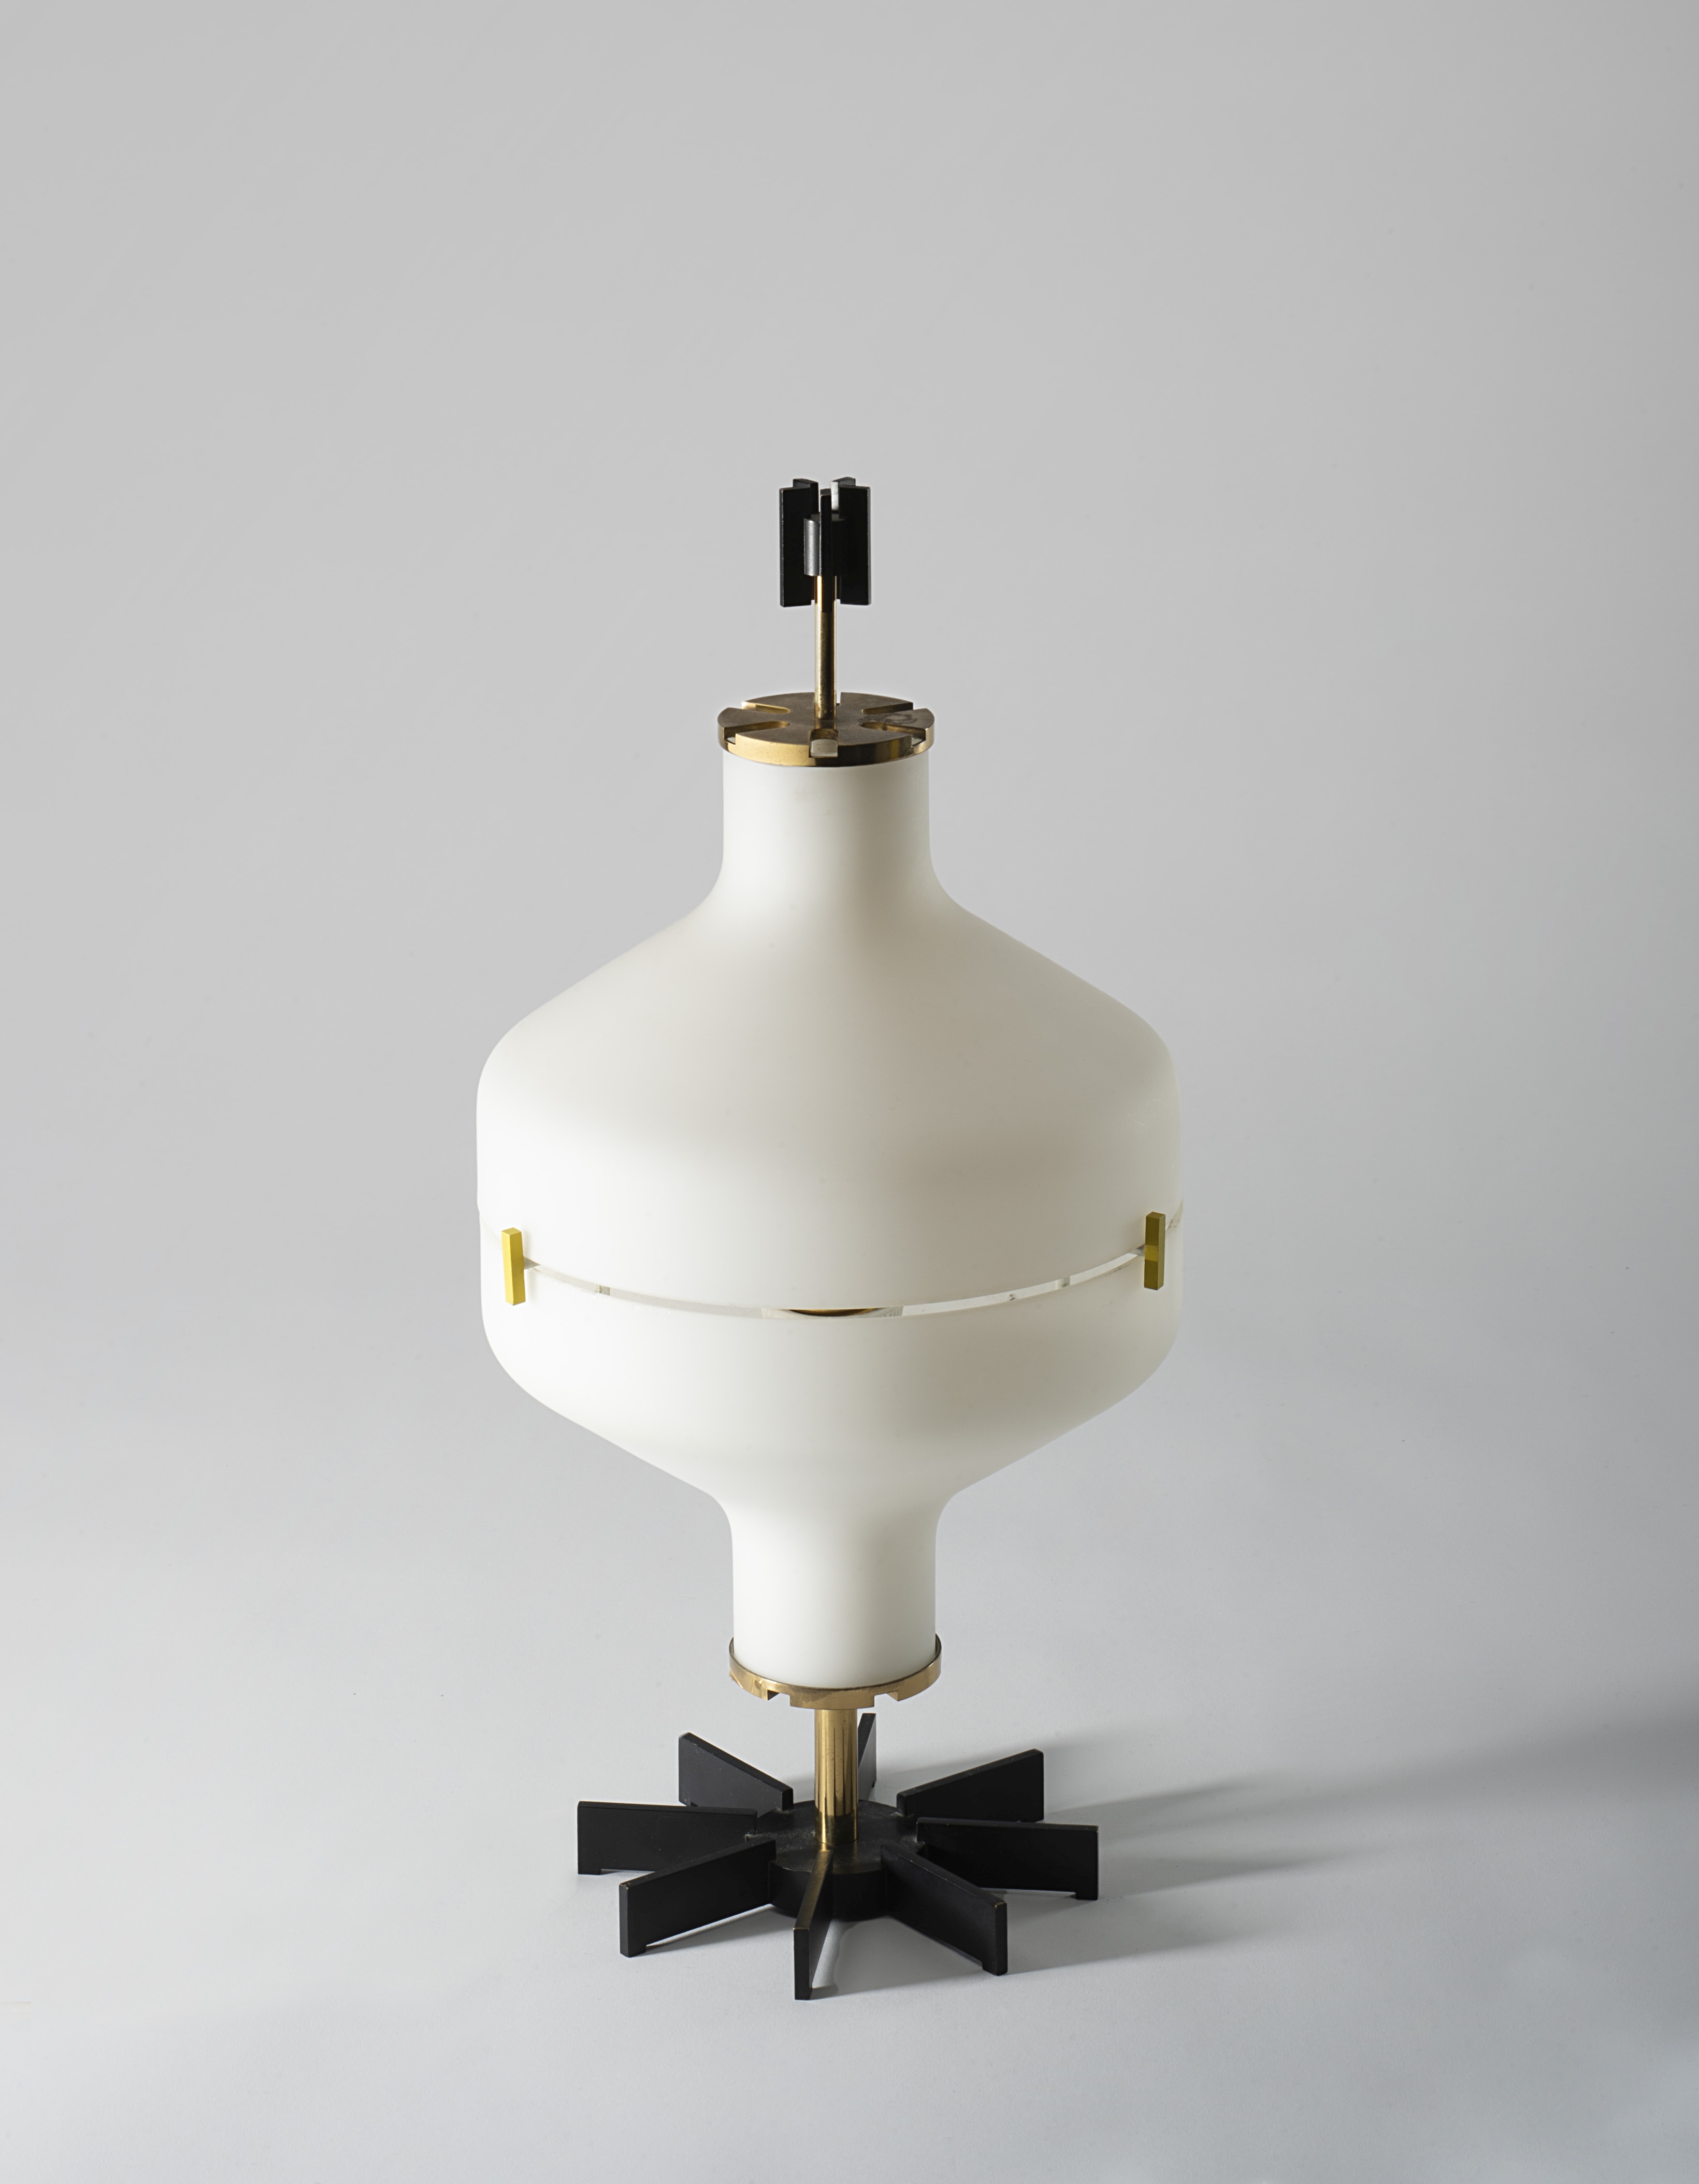 Angelo Lelii Table lamp, model no. 12676, circa 1958